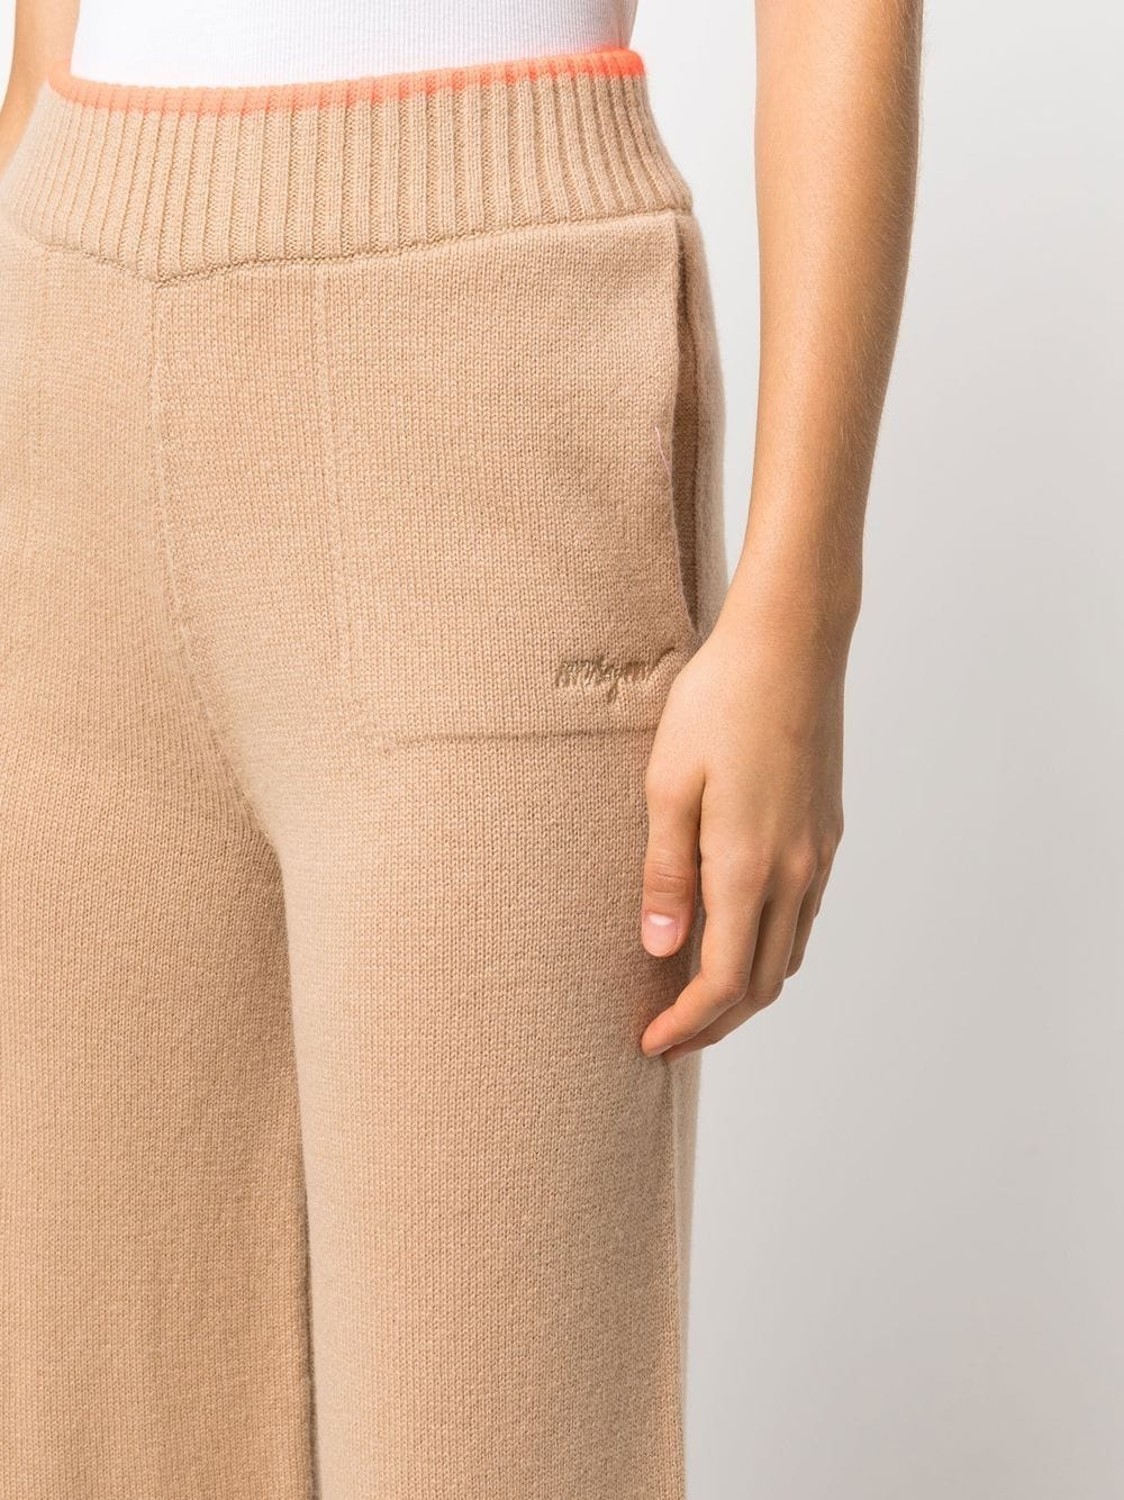 shop MSGM  Pantaloni: Pantaloni MSGM, modello corto, in lana e cashmere, tasche laterali, gamba larga, dettaglio fluo in vita, elastico in vita.

Composizione: 70% lana, 30% cashmere. number 2445